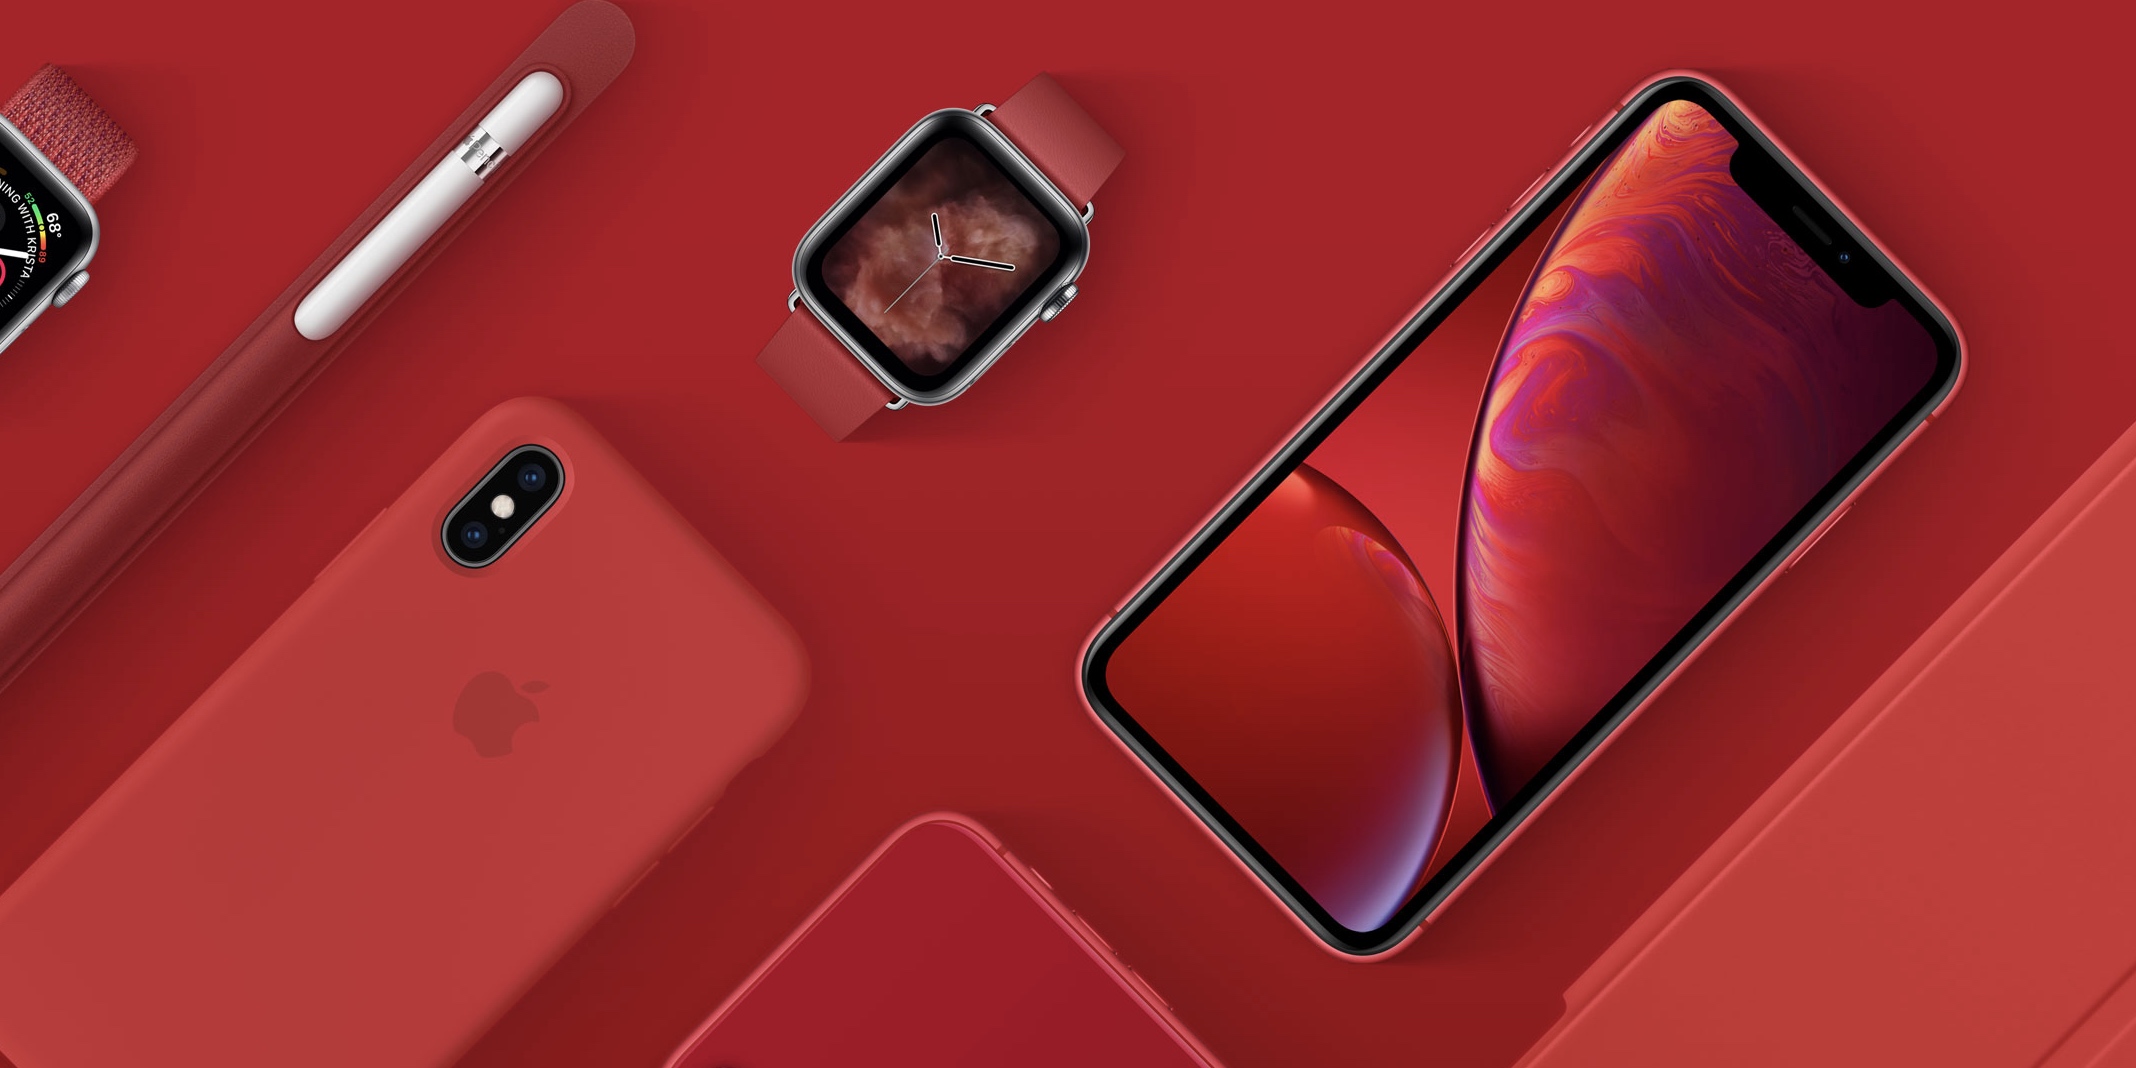 スマートフォン/携帯電話 スマートフォン本体 Red iPhone XS rumored